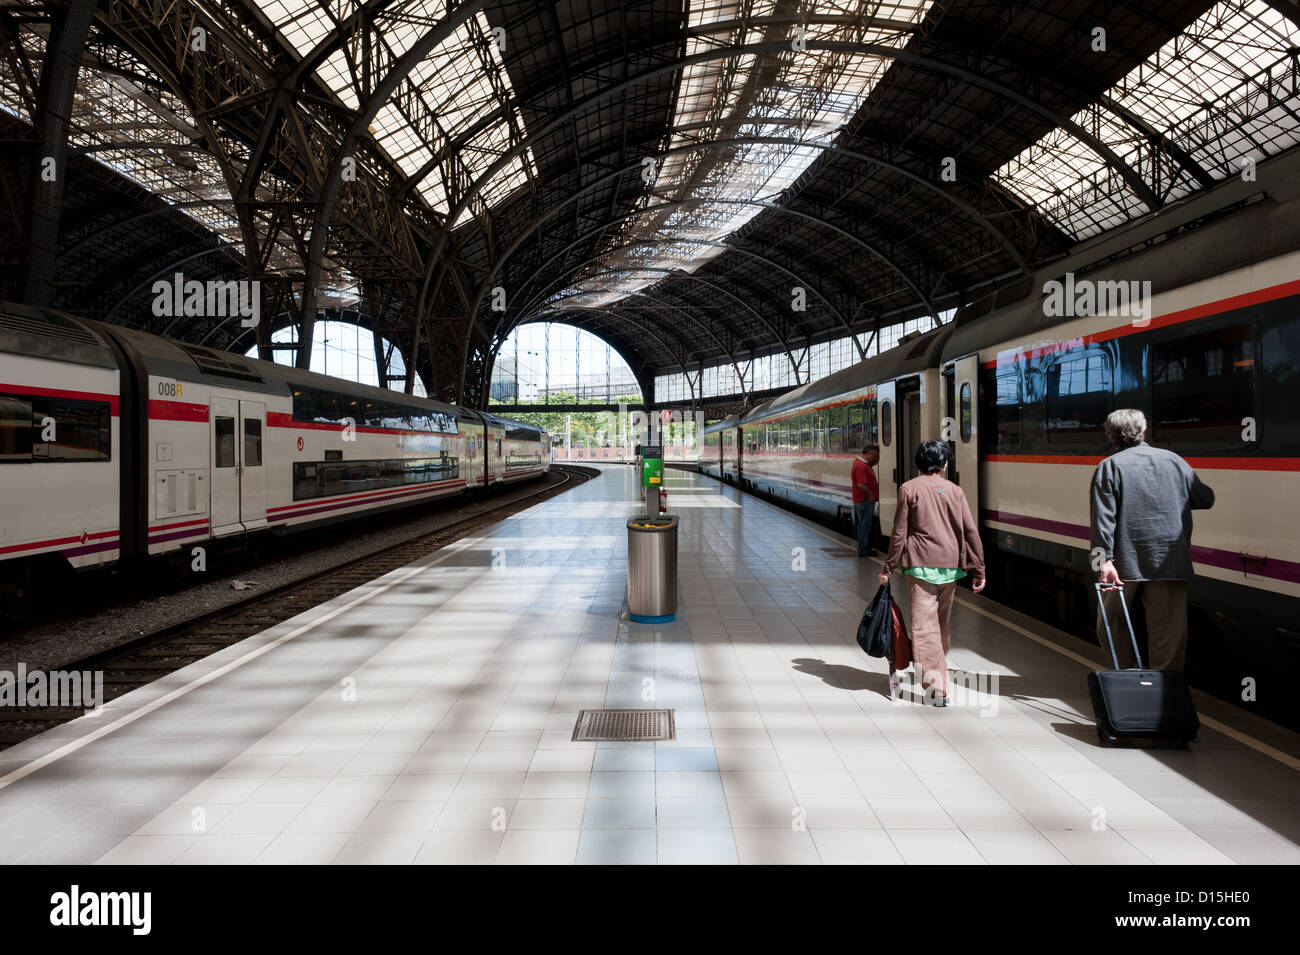 Barcelona, España: Los pasajeros de un tren en la plataforma de la estación de Francia (estacion de Francia). Foto de stock